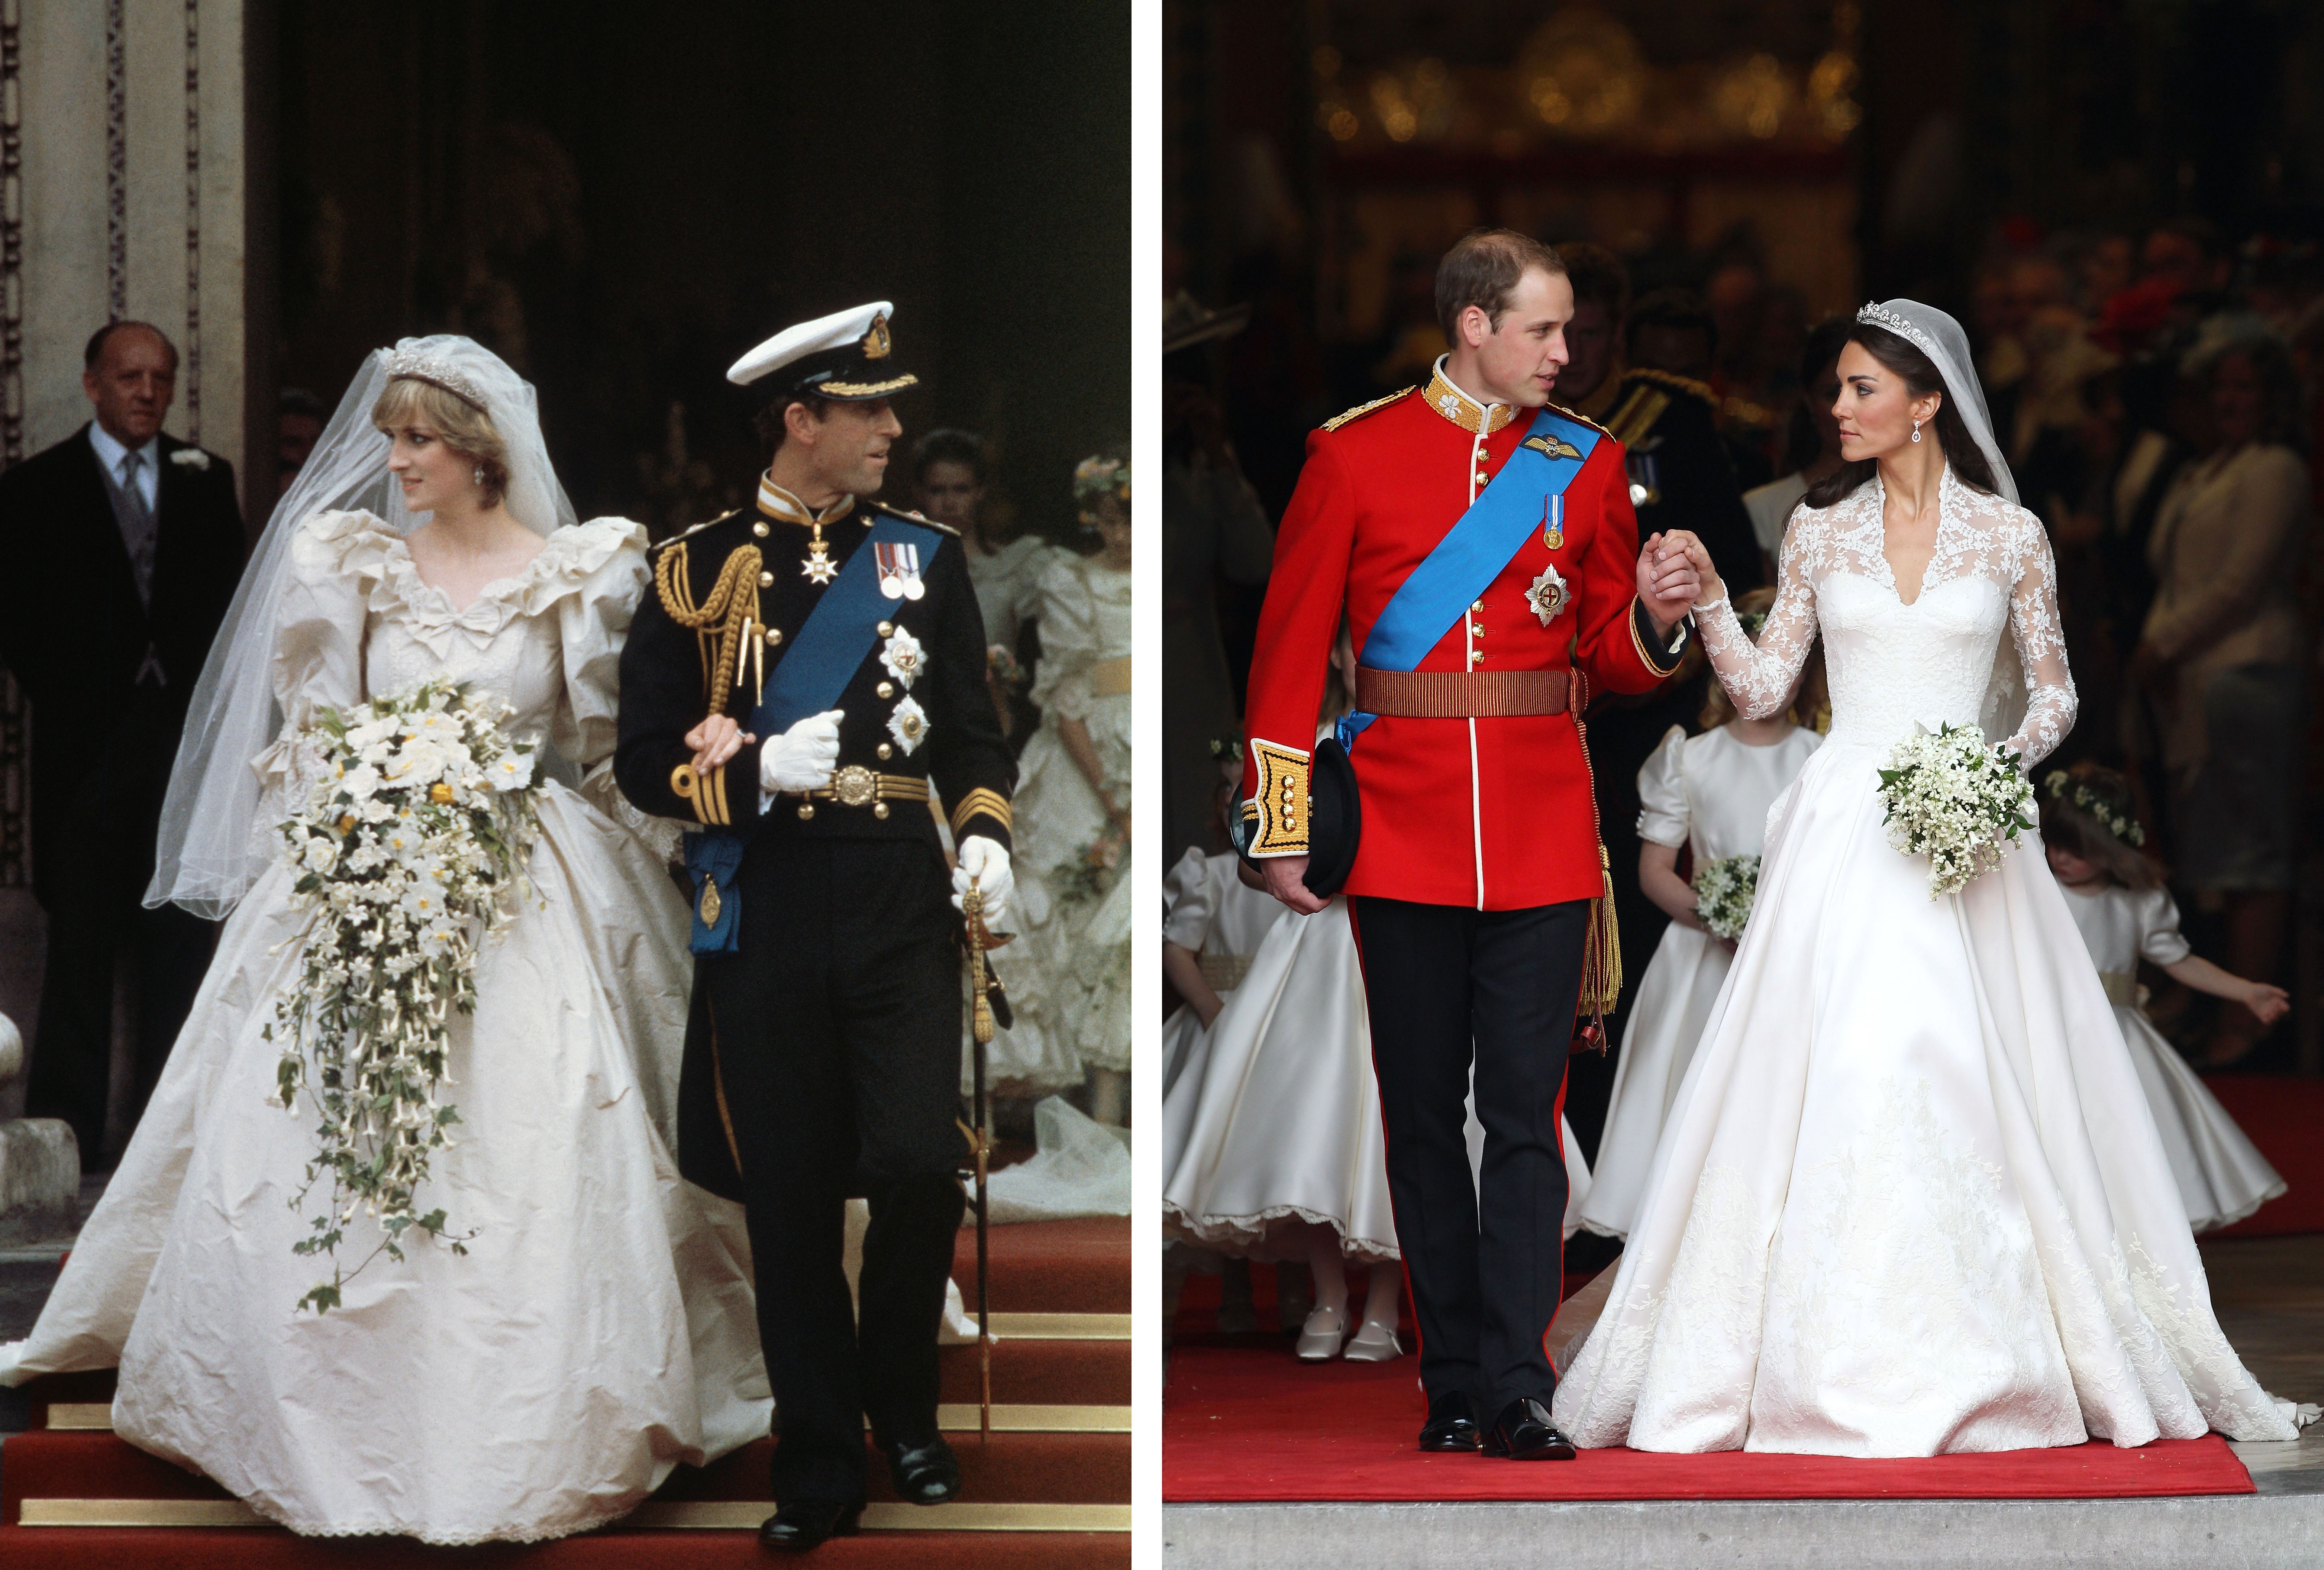 Diana y Charles el día de su boda en Londres en julio de 1981 / William y Kate el día de su boda en abril de 2011 en Londres. | Foto: Getty Images